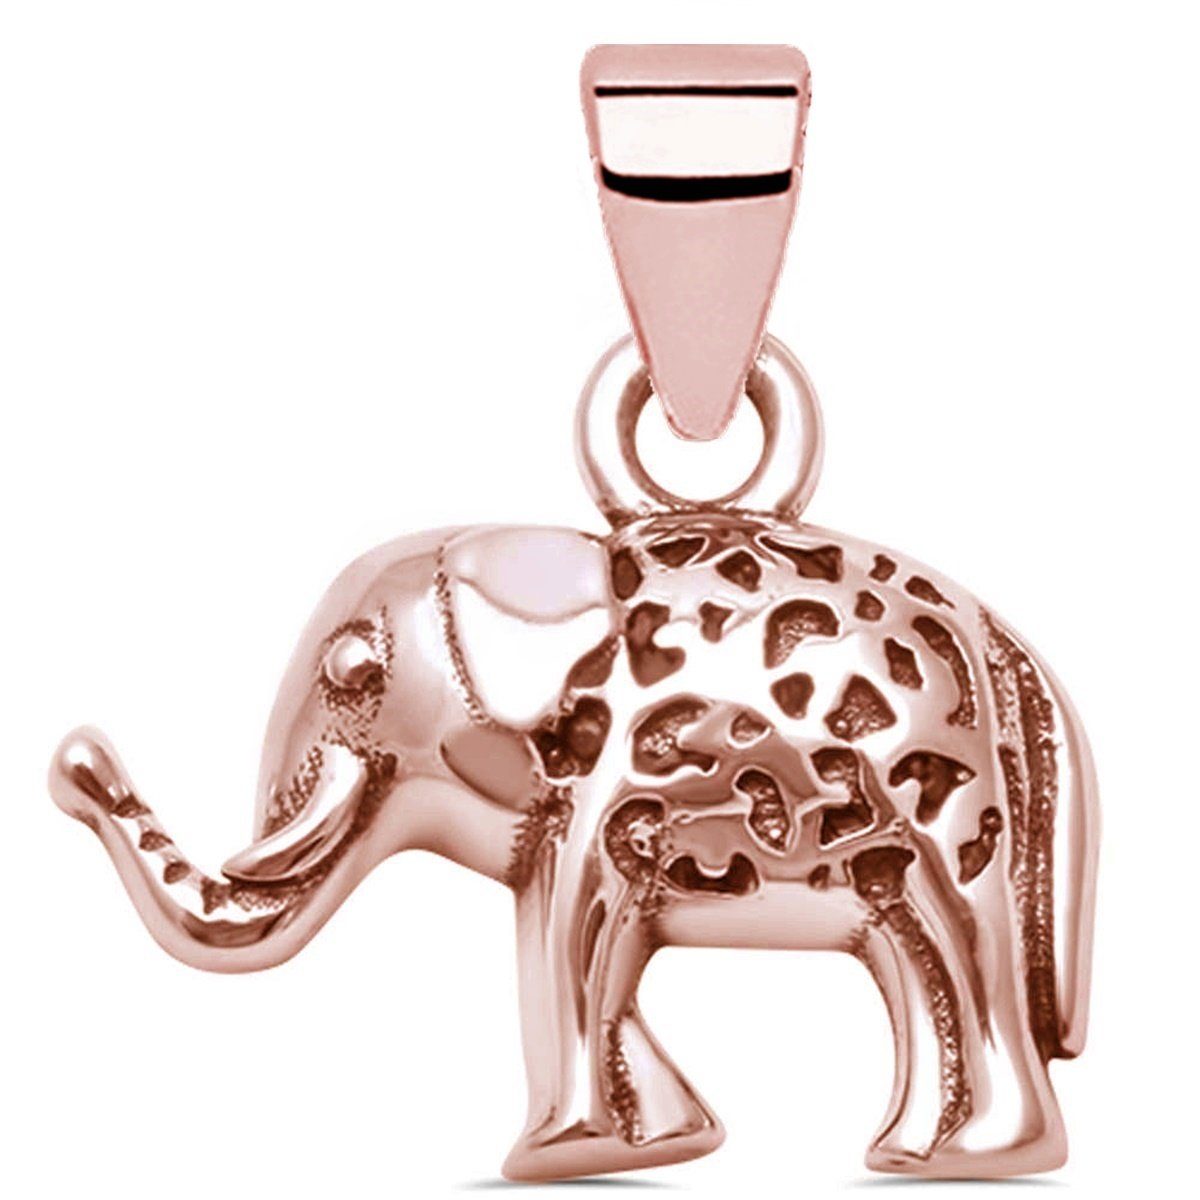 Damen Schmuck Goldene Hufeisen Kettenanhänger Elefant Anhänger aus 925 Sterling Silber in Rosegold (inkl. Etui), Rose Vergoldet